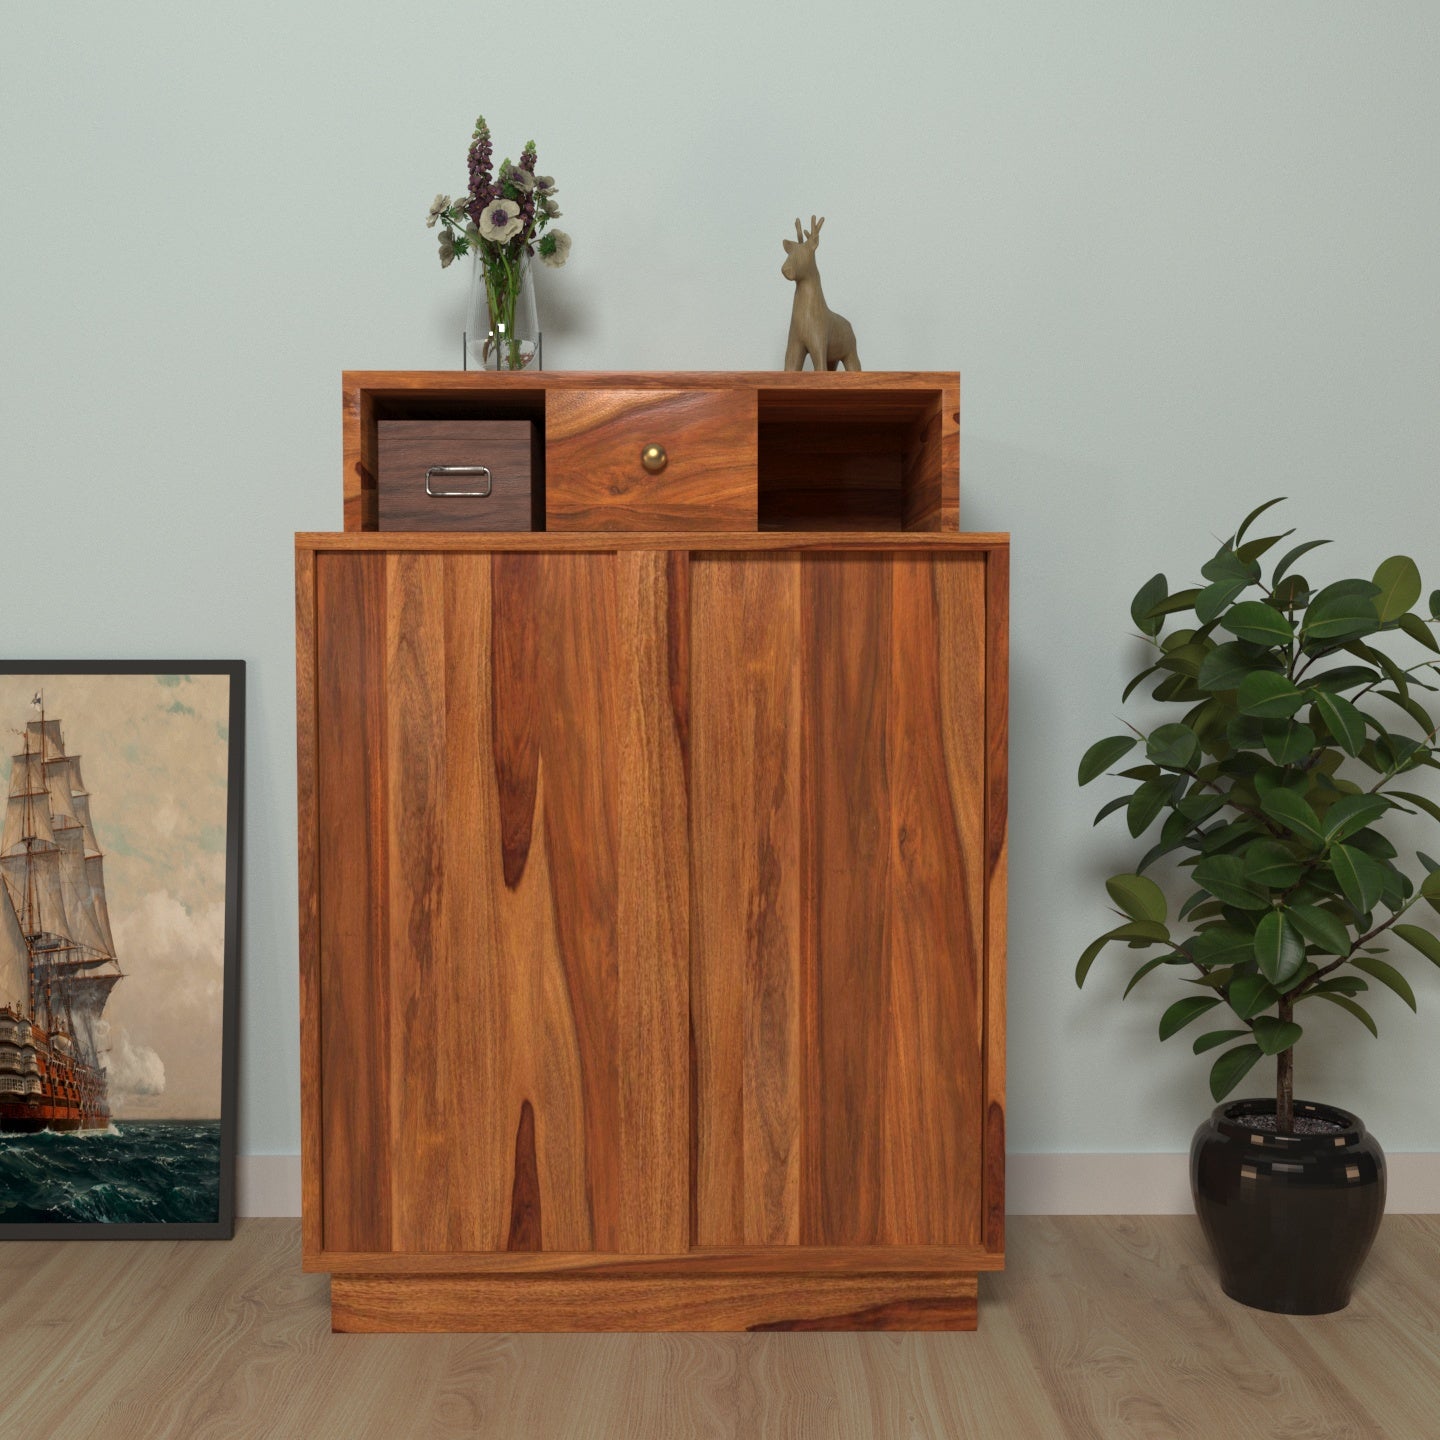 Classic Style Multiple Storage Wooden Side Board Cupboard